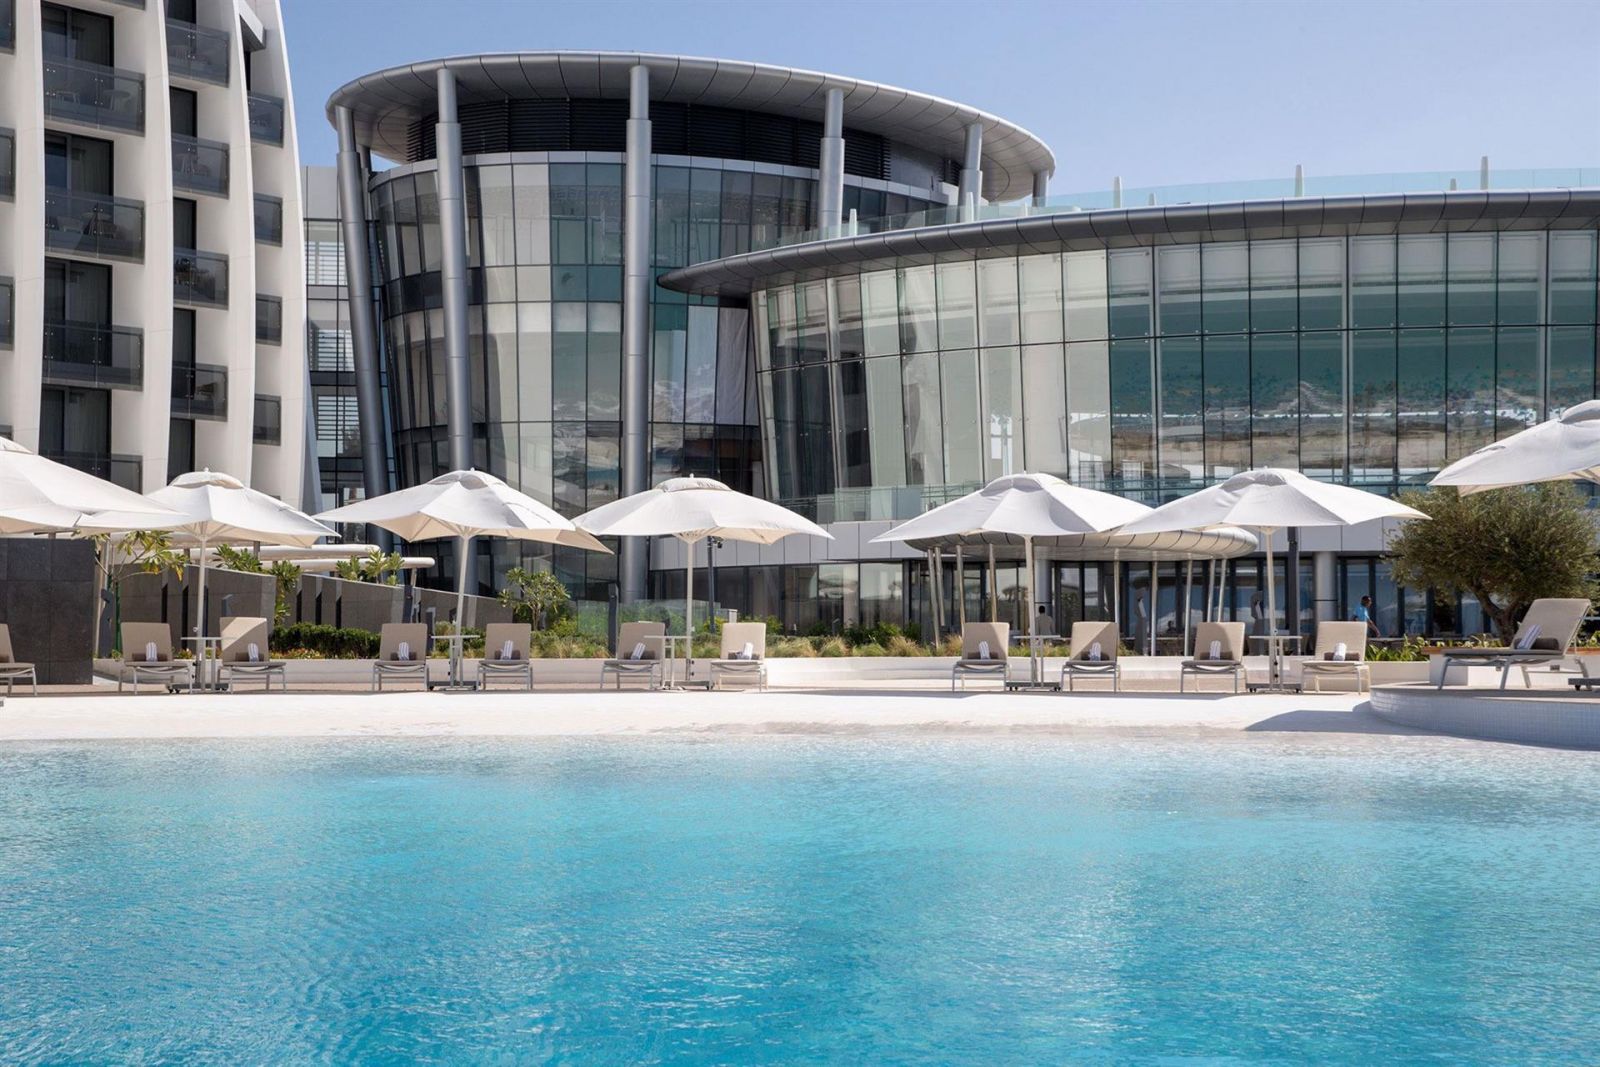 Выбираем тур и отель в Абу-Даби: что посмотреть и где остановиться АбуДаби, также, двоих, ночей, питание, вылет, отель, стиле, большой, расположен, Saadiyat, советуем, уровень, набережной, можно, дворец, самой, пляже, эмирата, достопримечательностей